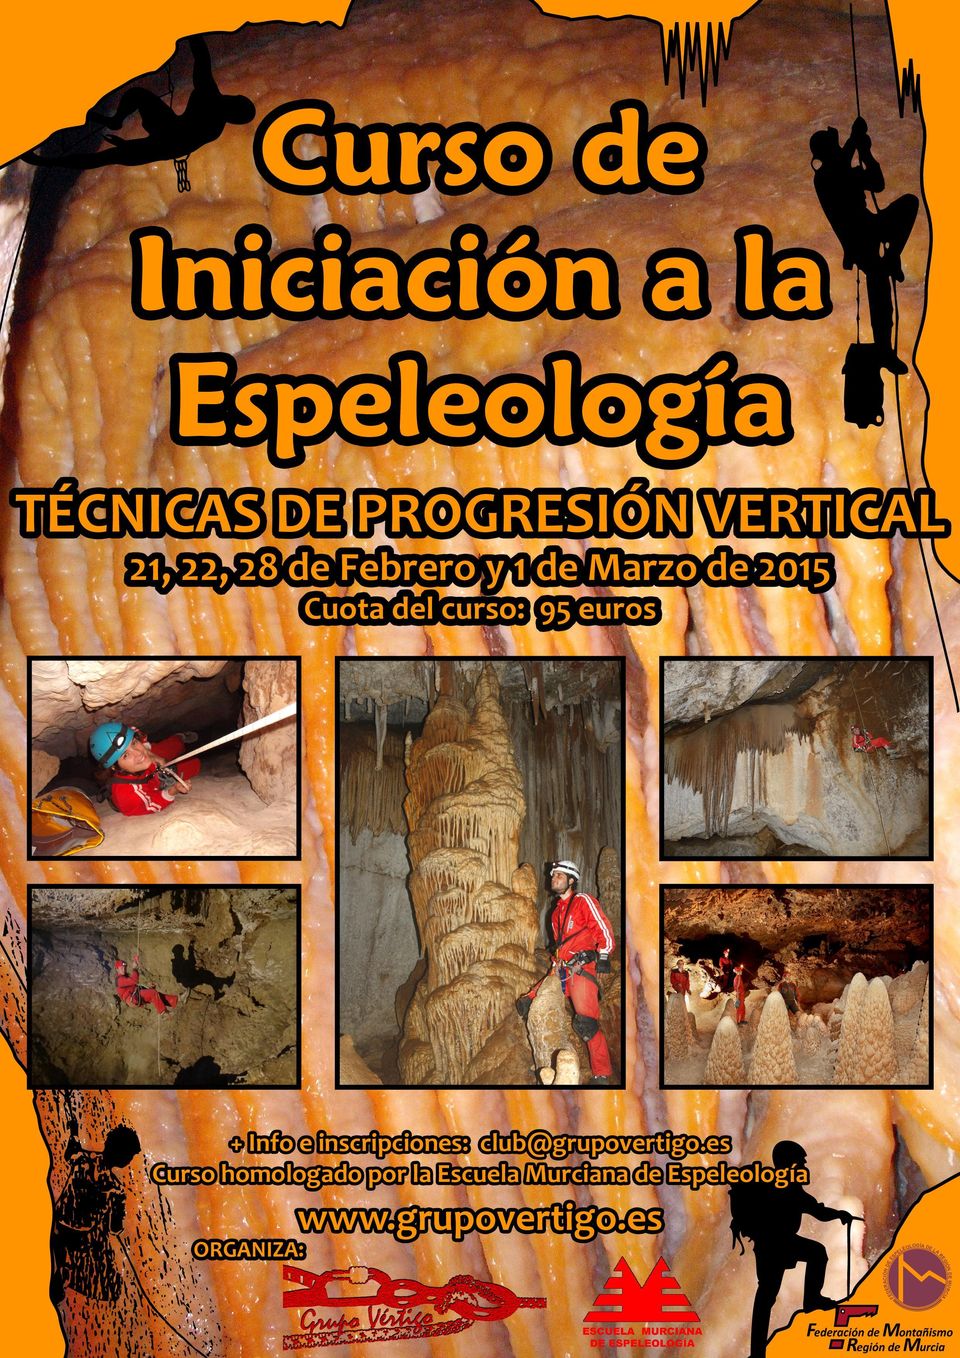 Info e inscripciones: Curso homologado por la Escuela Murciana de